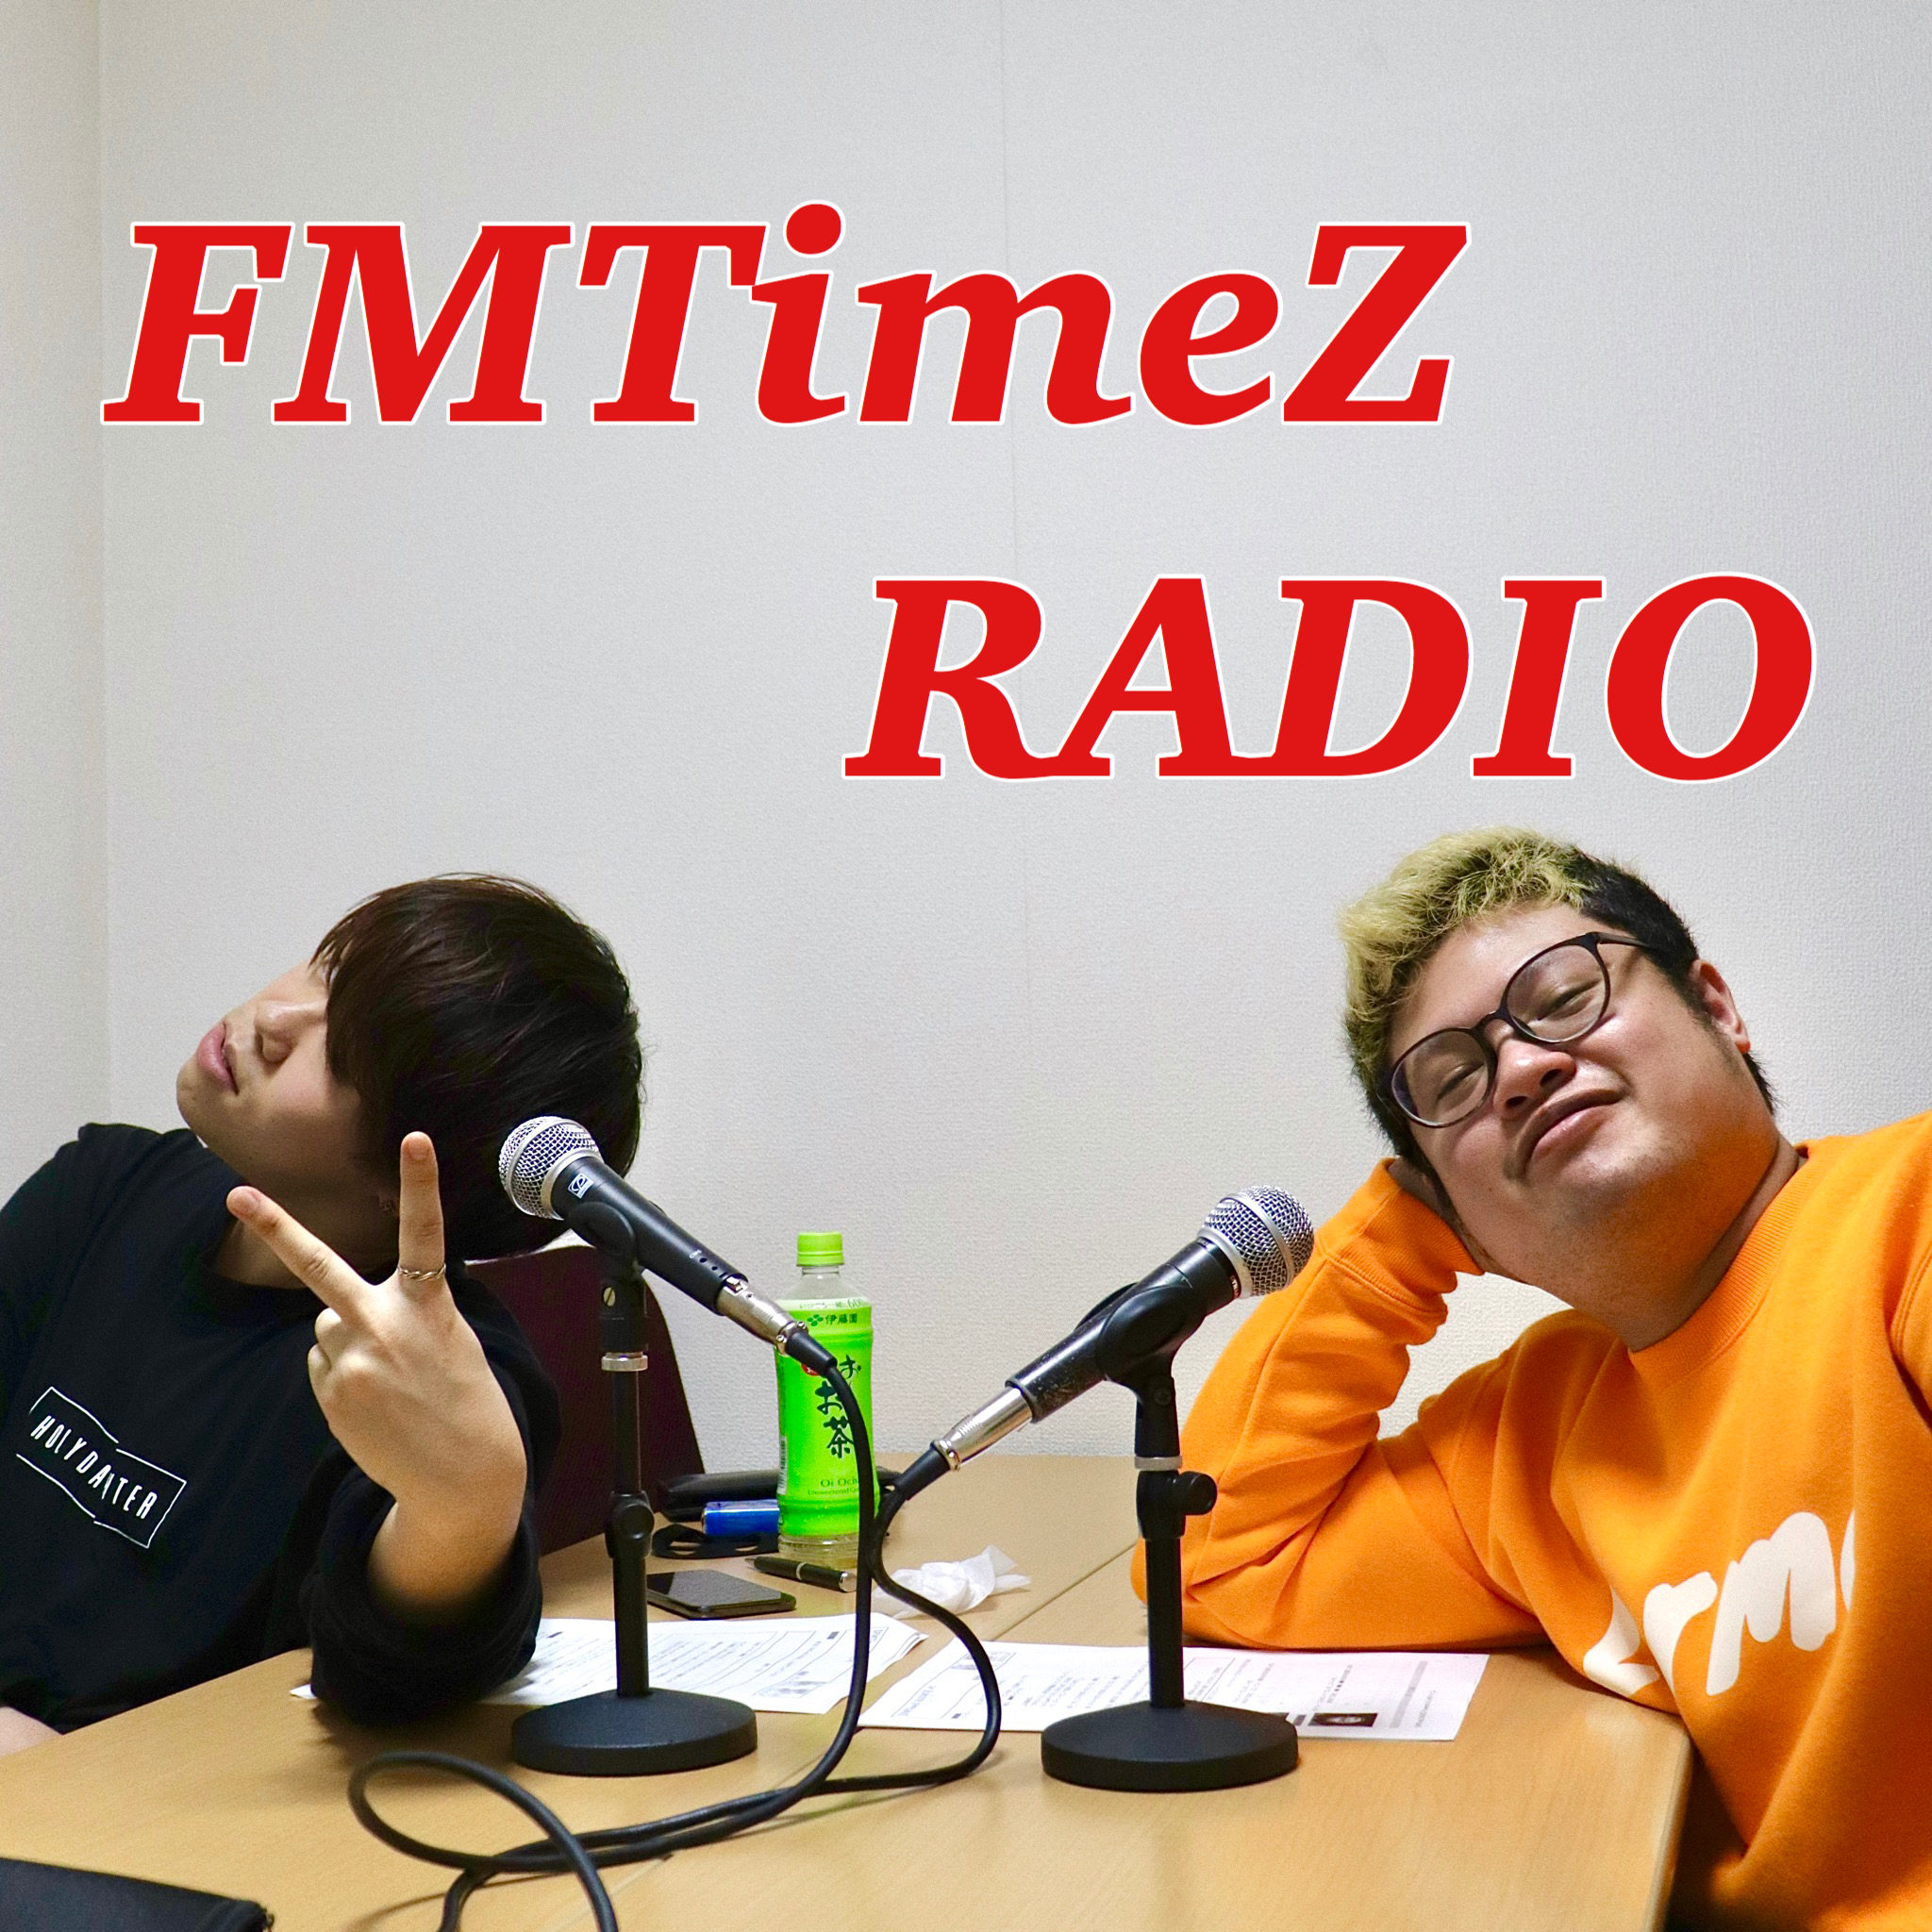 FMTimeZ RADIO